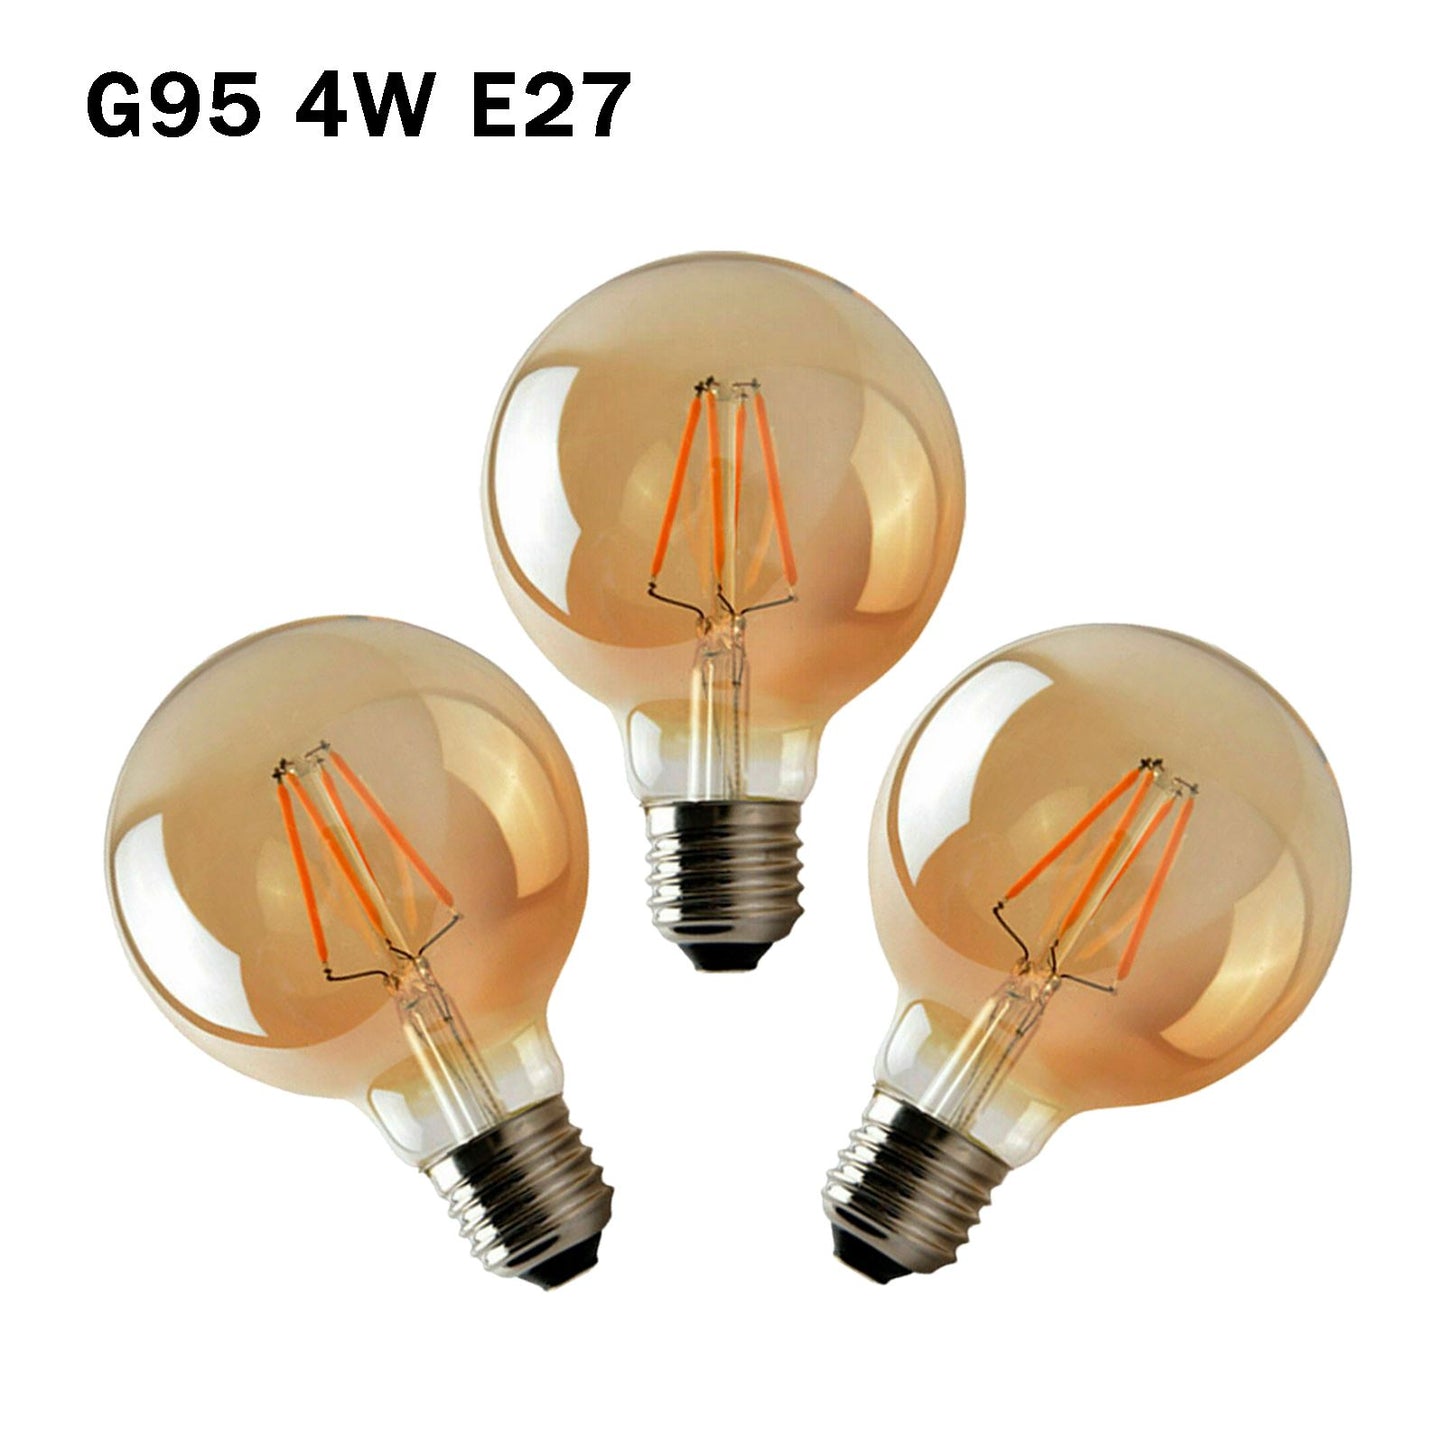 Hochwertige G95 E27 4W Glühbirnen online | Perfekte Beleuchtung!